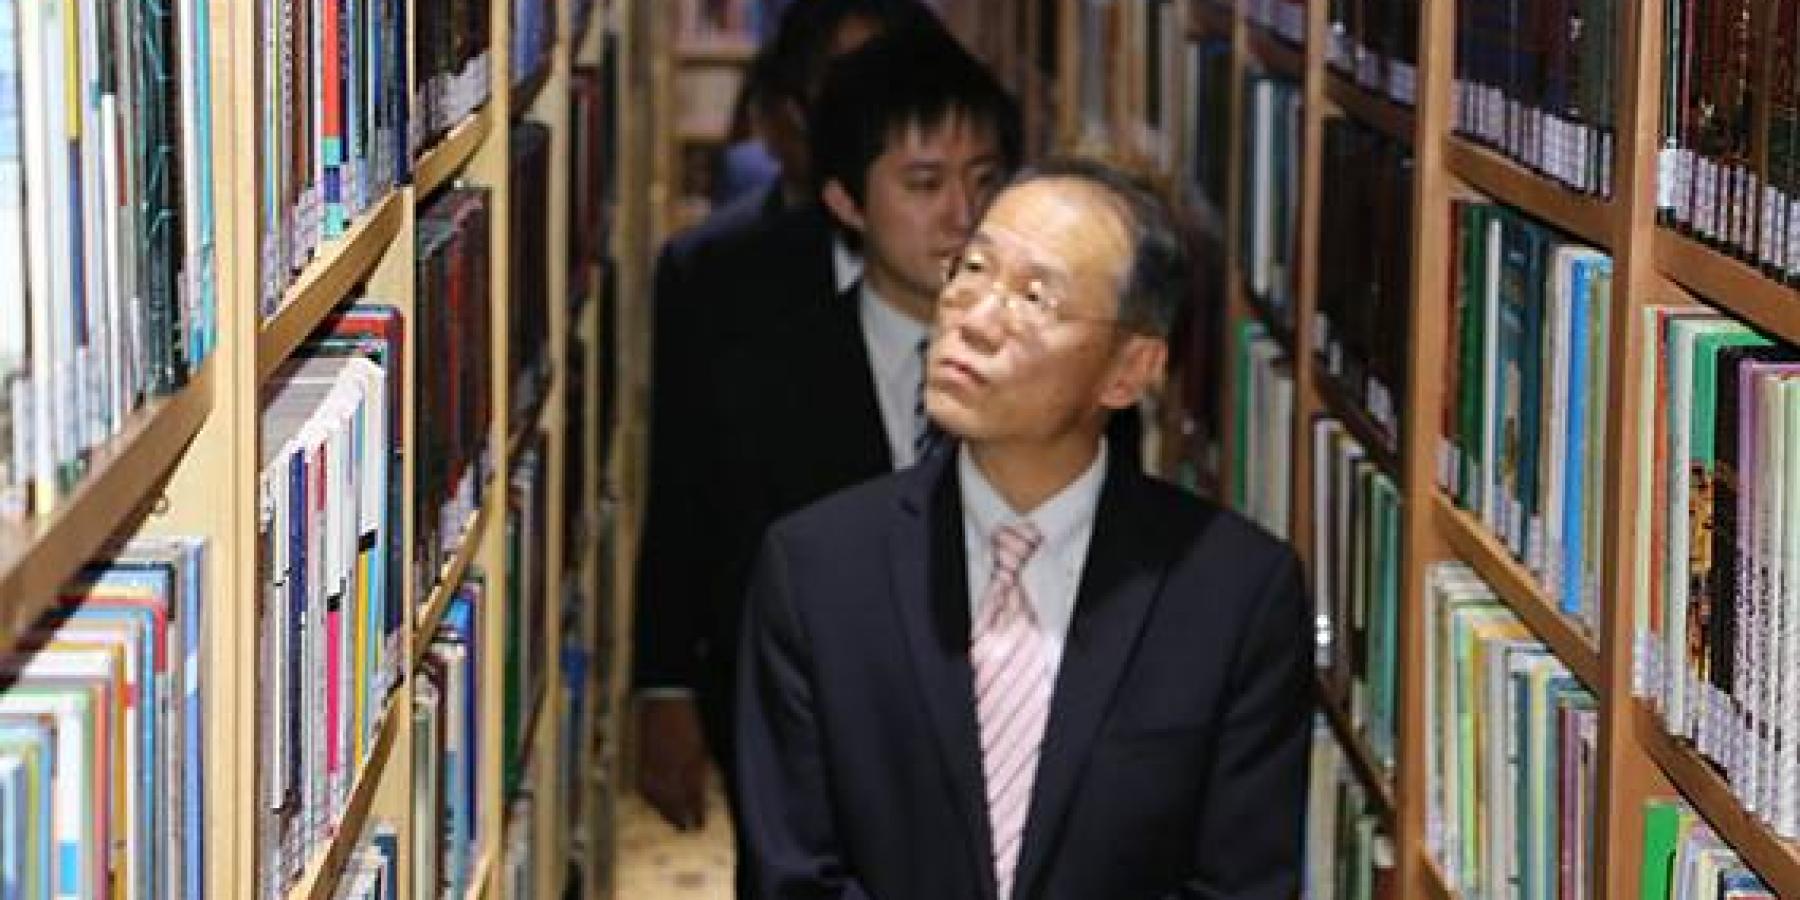  السفير الياباني يبدي دهشته وإعجابه بمكتبة الروضة الحيدرية